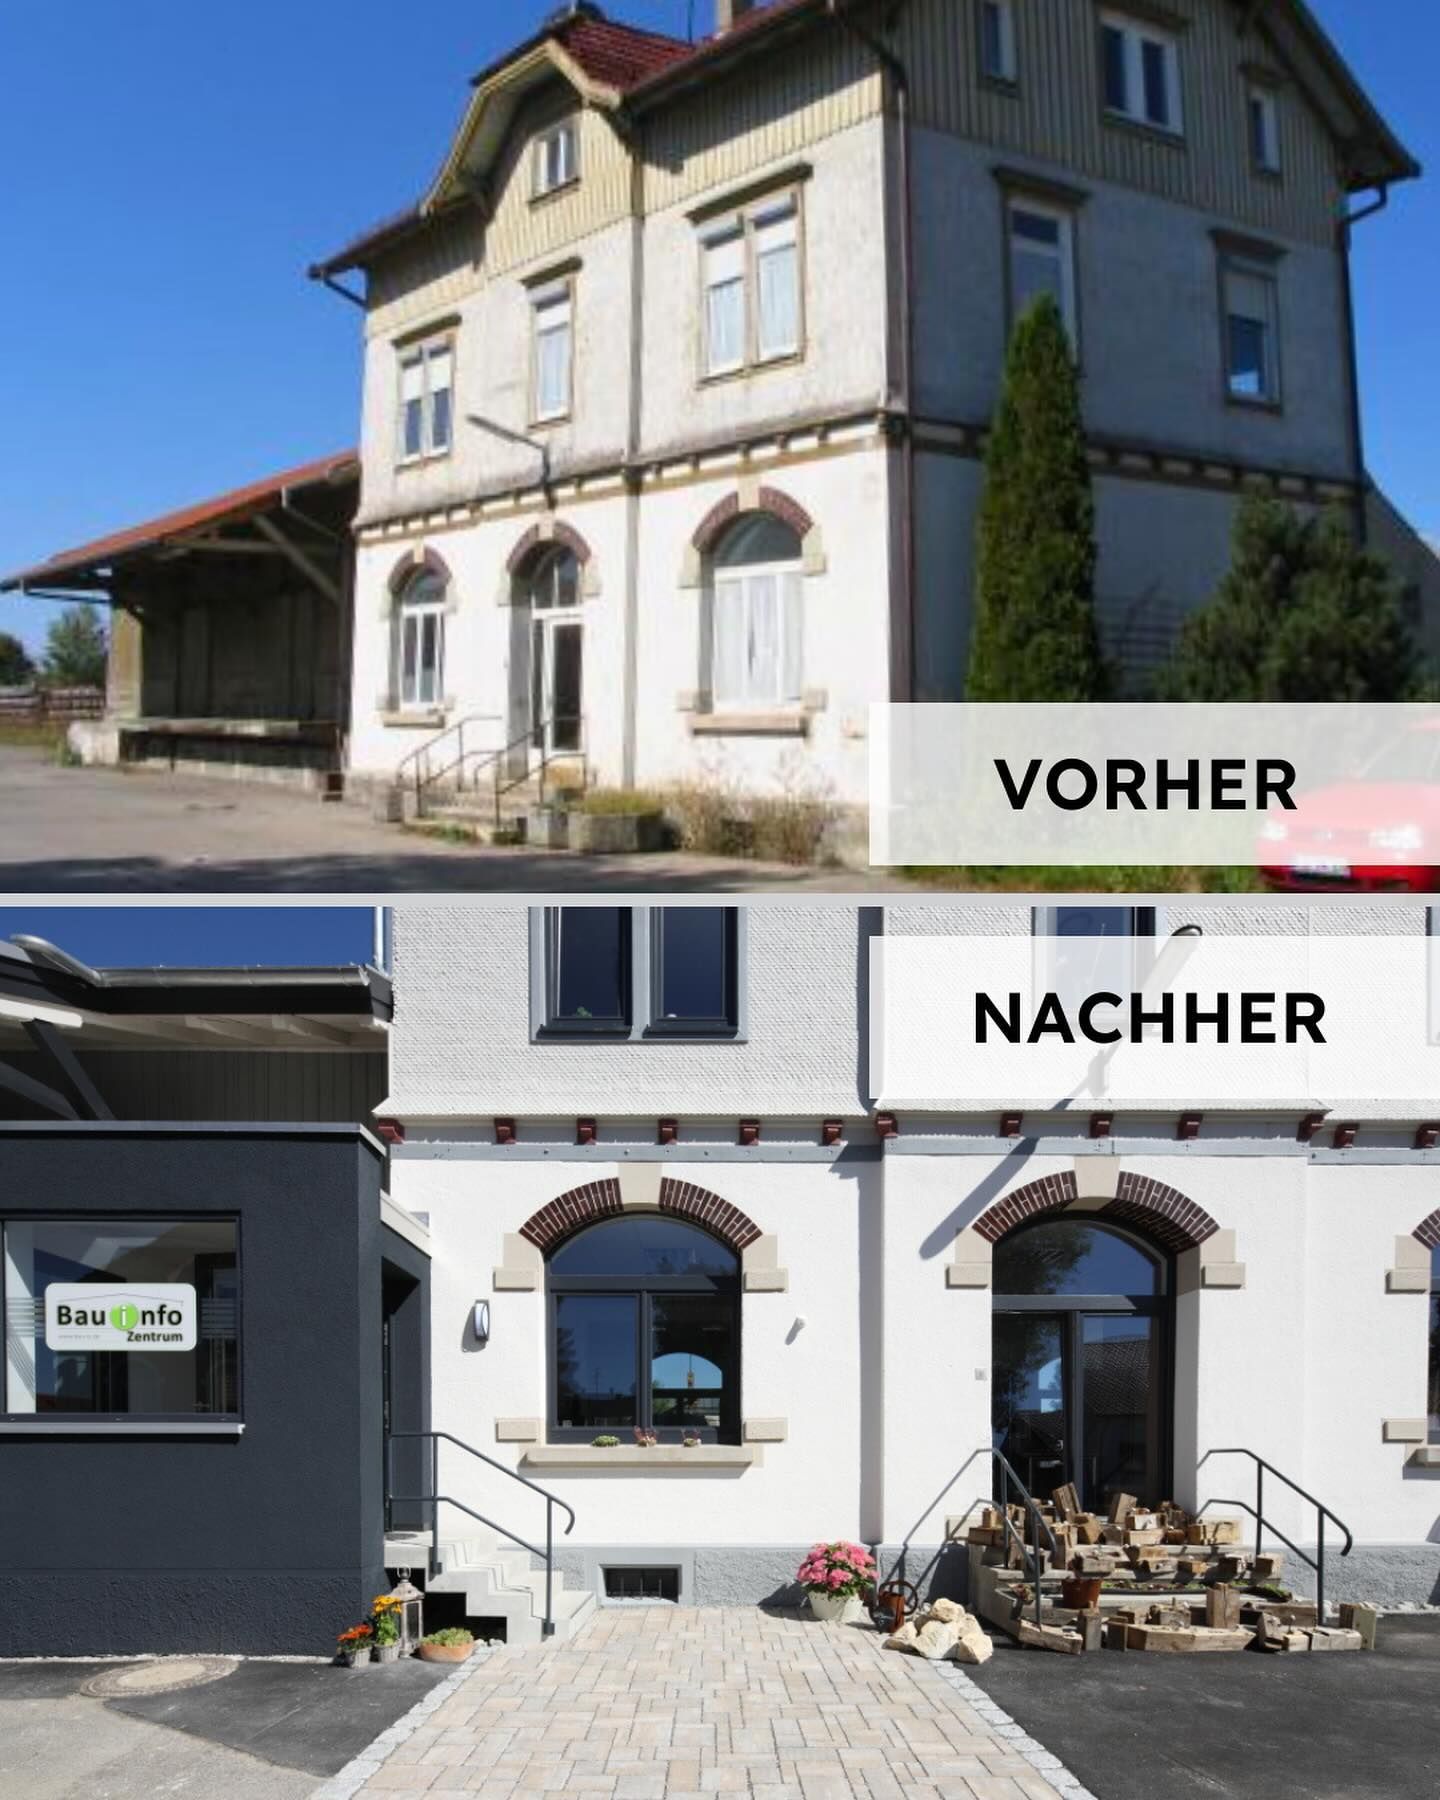 Instagram News: Unser Bahnhofsgebäude 🏗️
 
Nun tauchen wir erne...